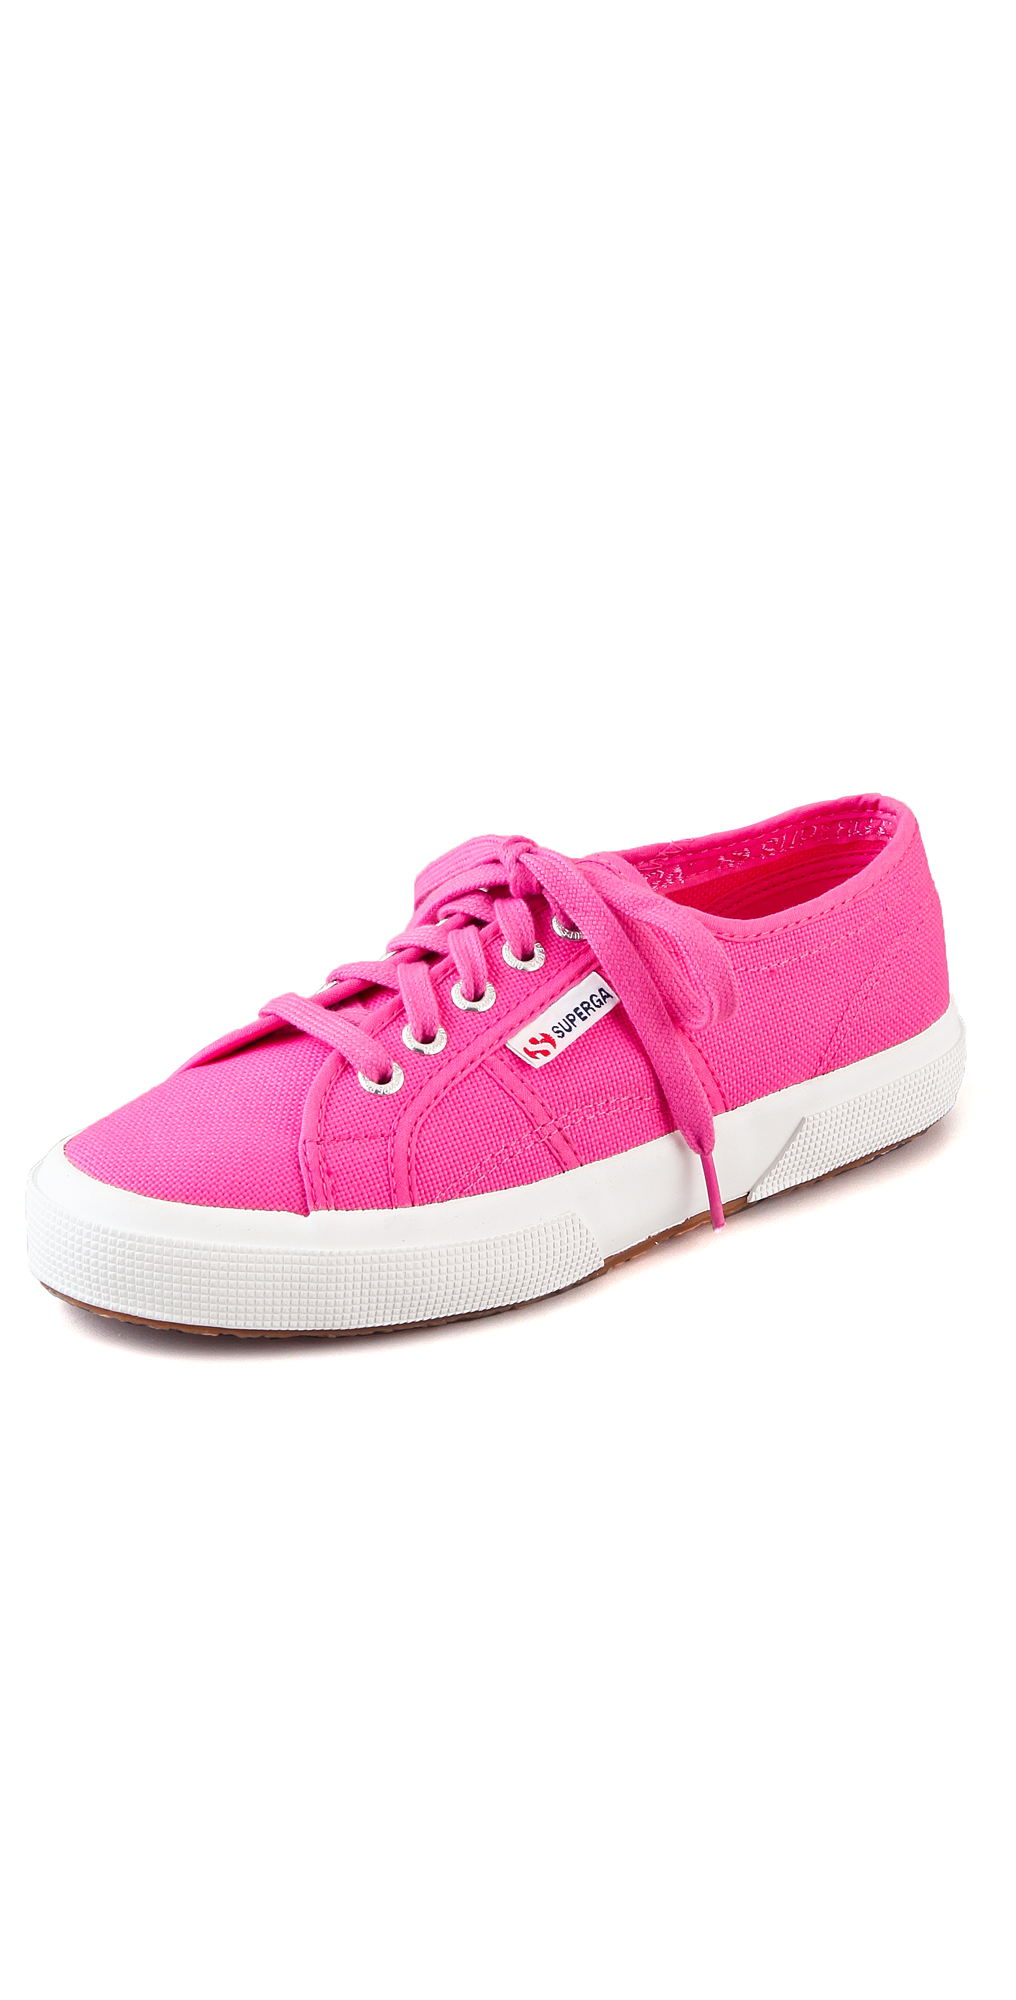 Superga Cotu Classic Sneakers Fuxia Fuchsia in Pink | Lyst